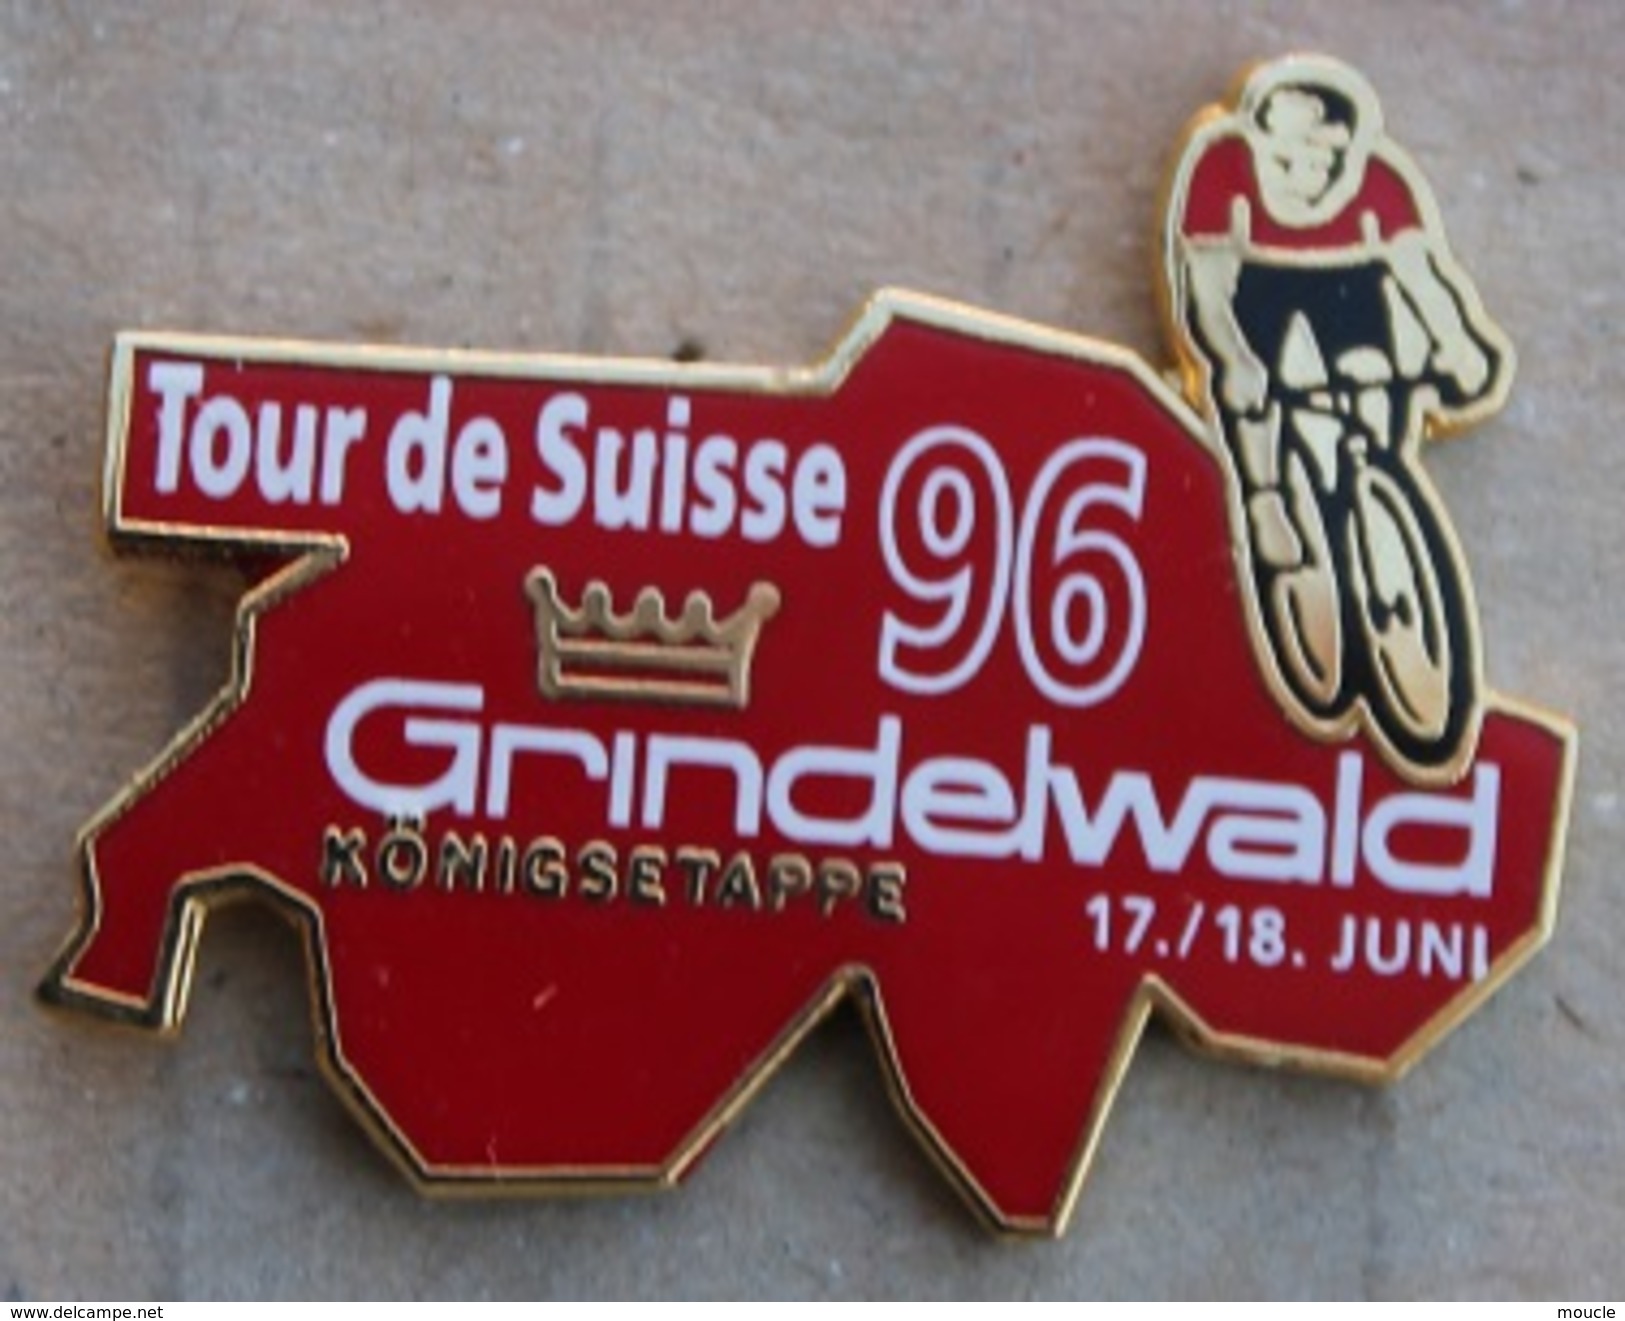 CYCLISME - VELO - CYCLISTE - TOUR DE SUISSE 96 - GRINDELWALD 17/18 JUIN - COURONNE - KÖNIGSETAPPE - SCHWEIZ -     (15) - Cycling